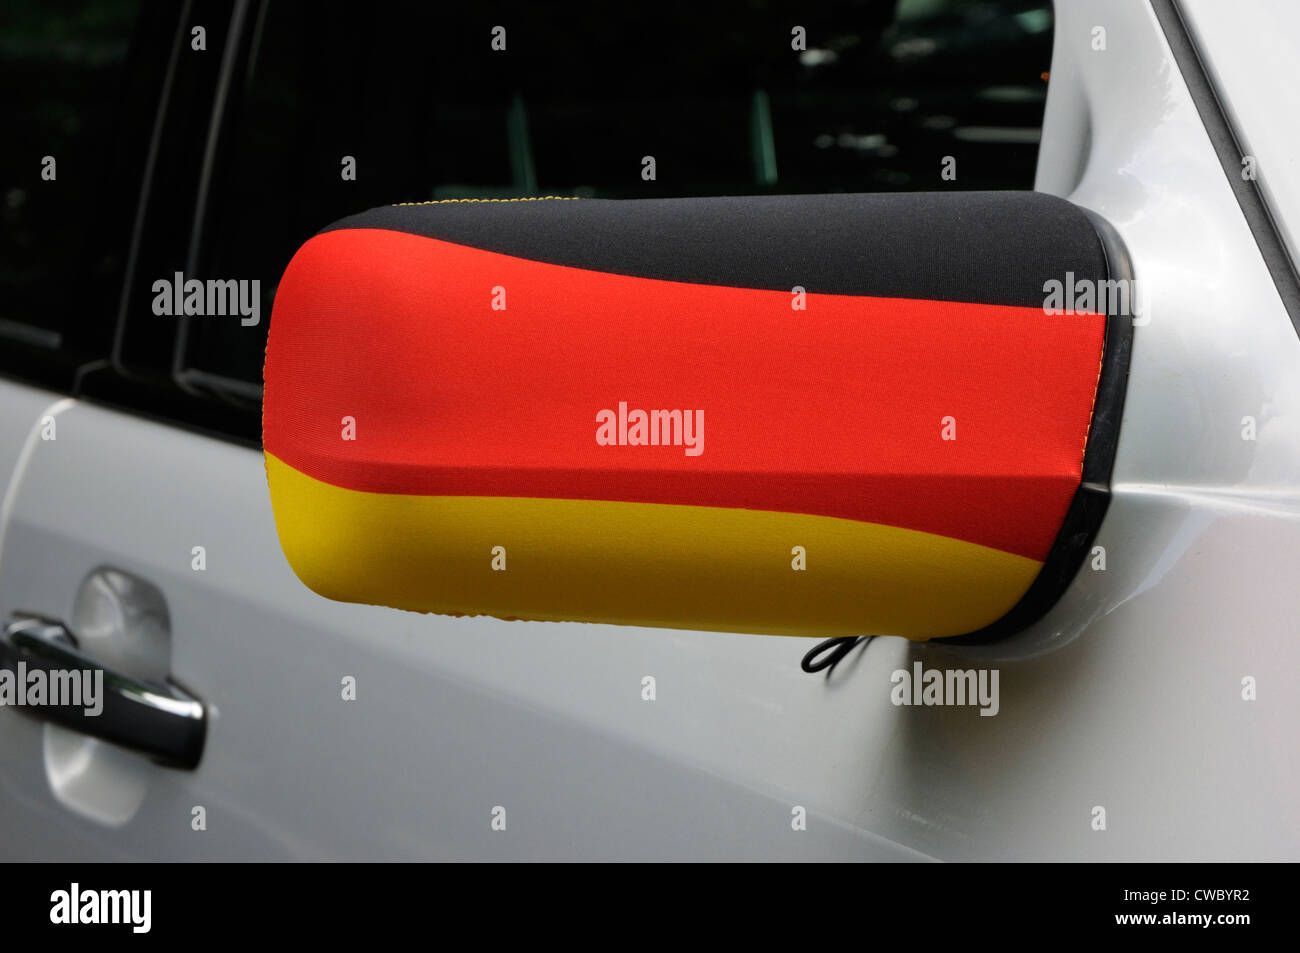 Die Farben der deutschen Flagge auf einem Auto-Flügel-Spiegel während der  Euro 2012, Frankfurt am Main, Deutschland Stockfotografie - Alamy